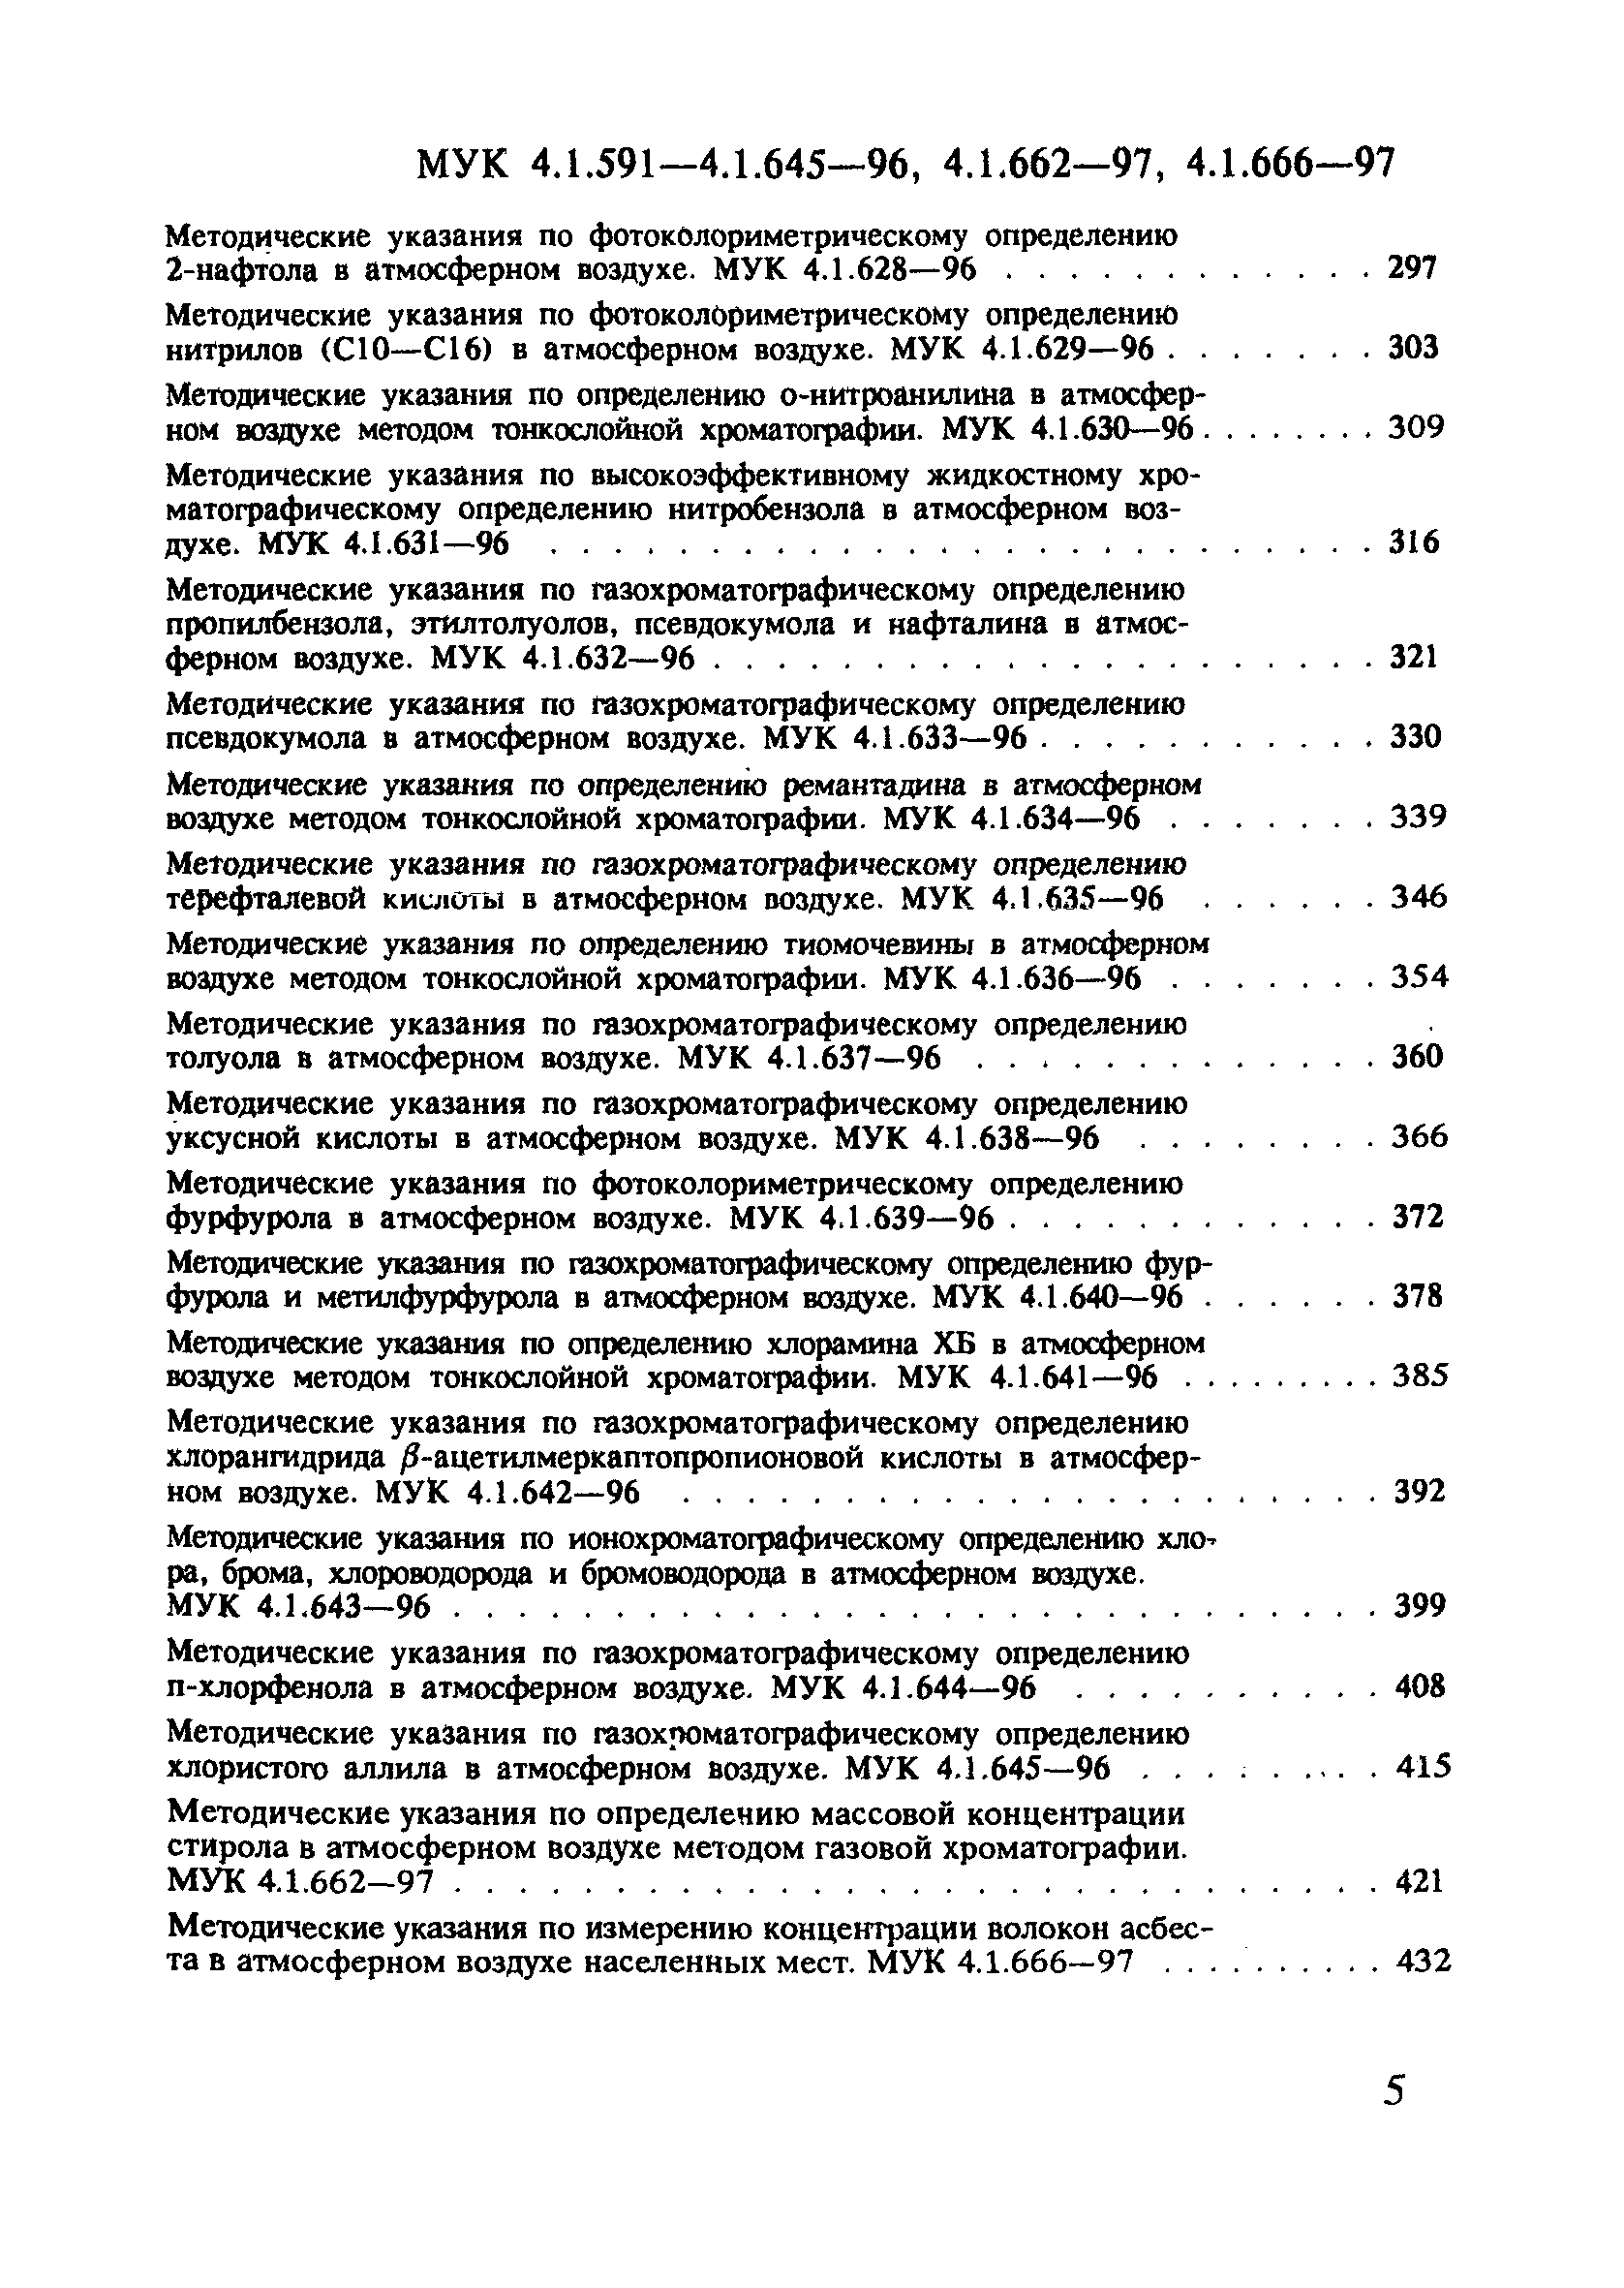 МУК 4.1.618-96